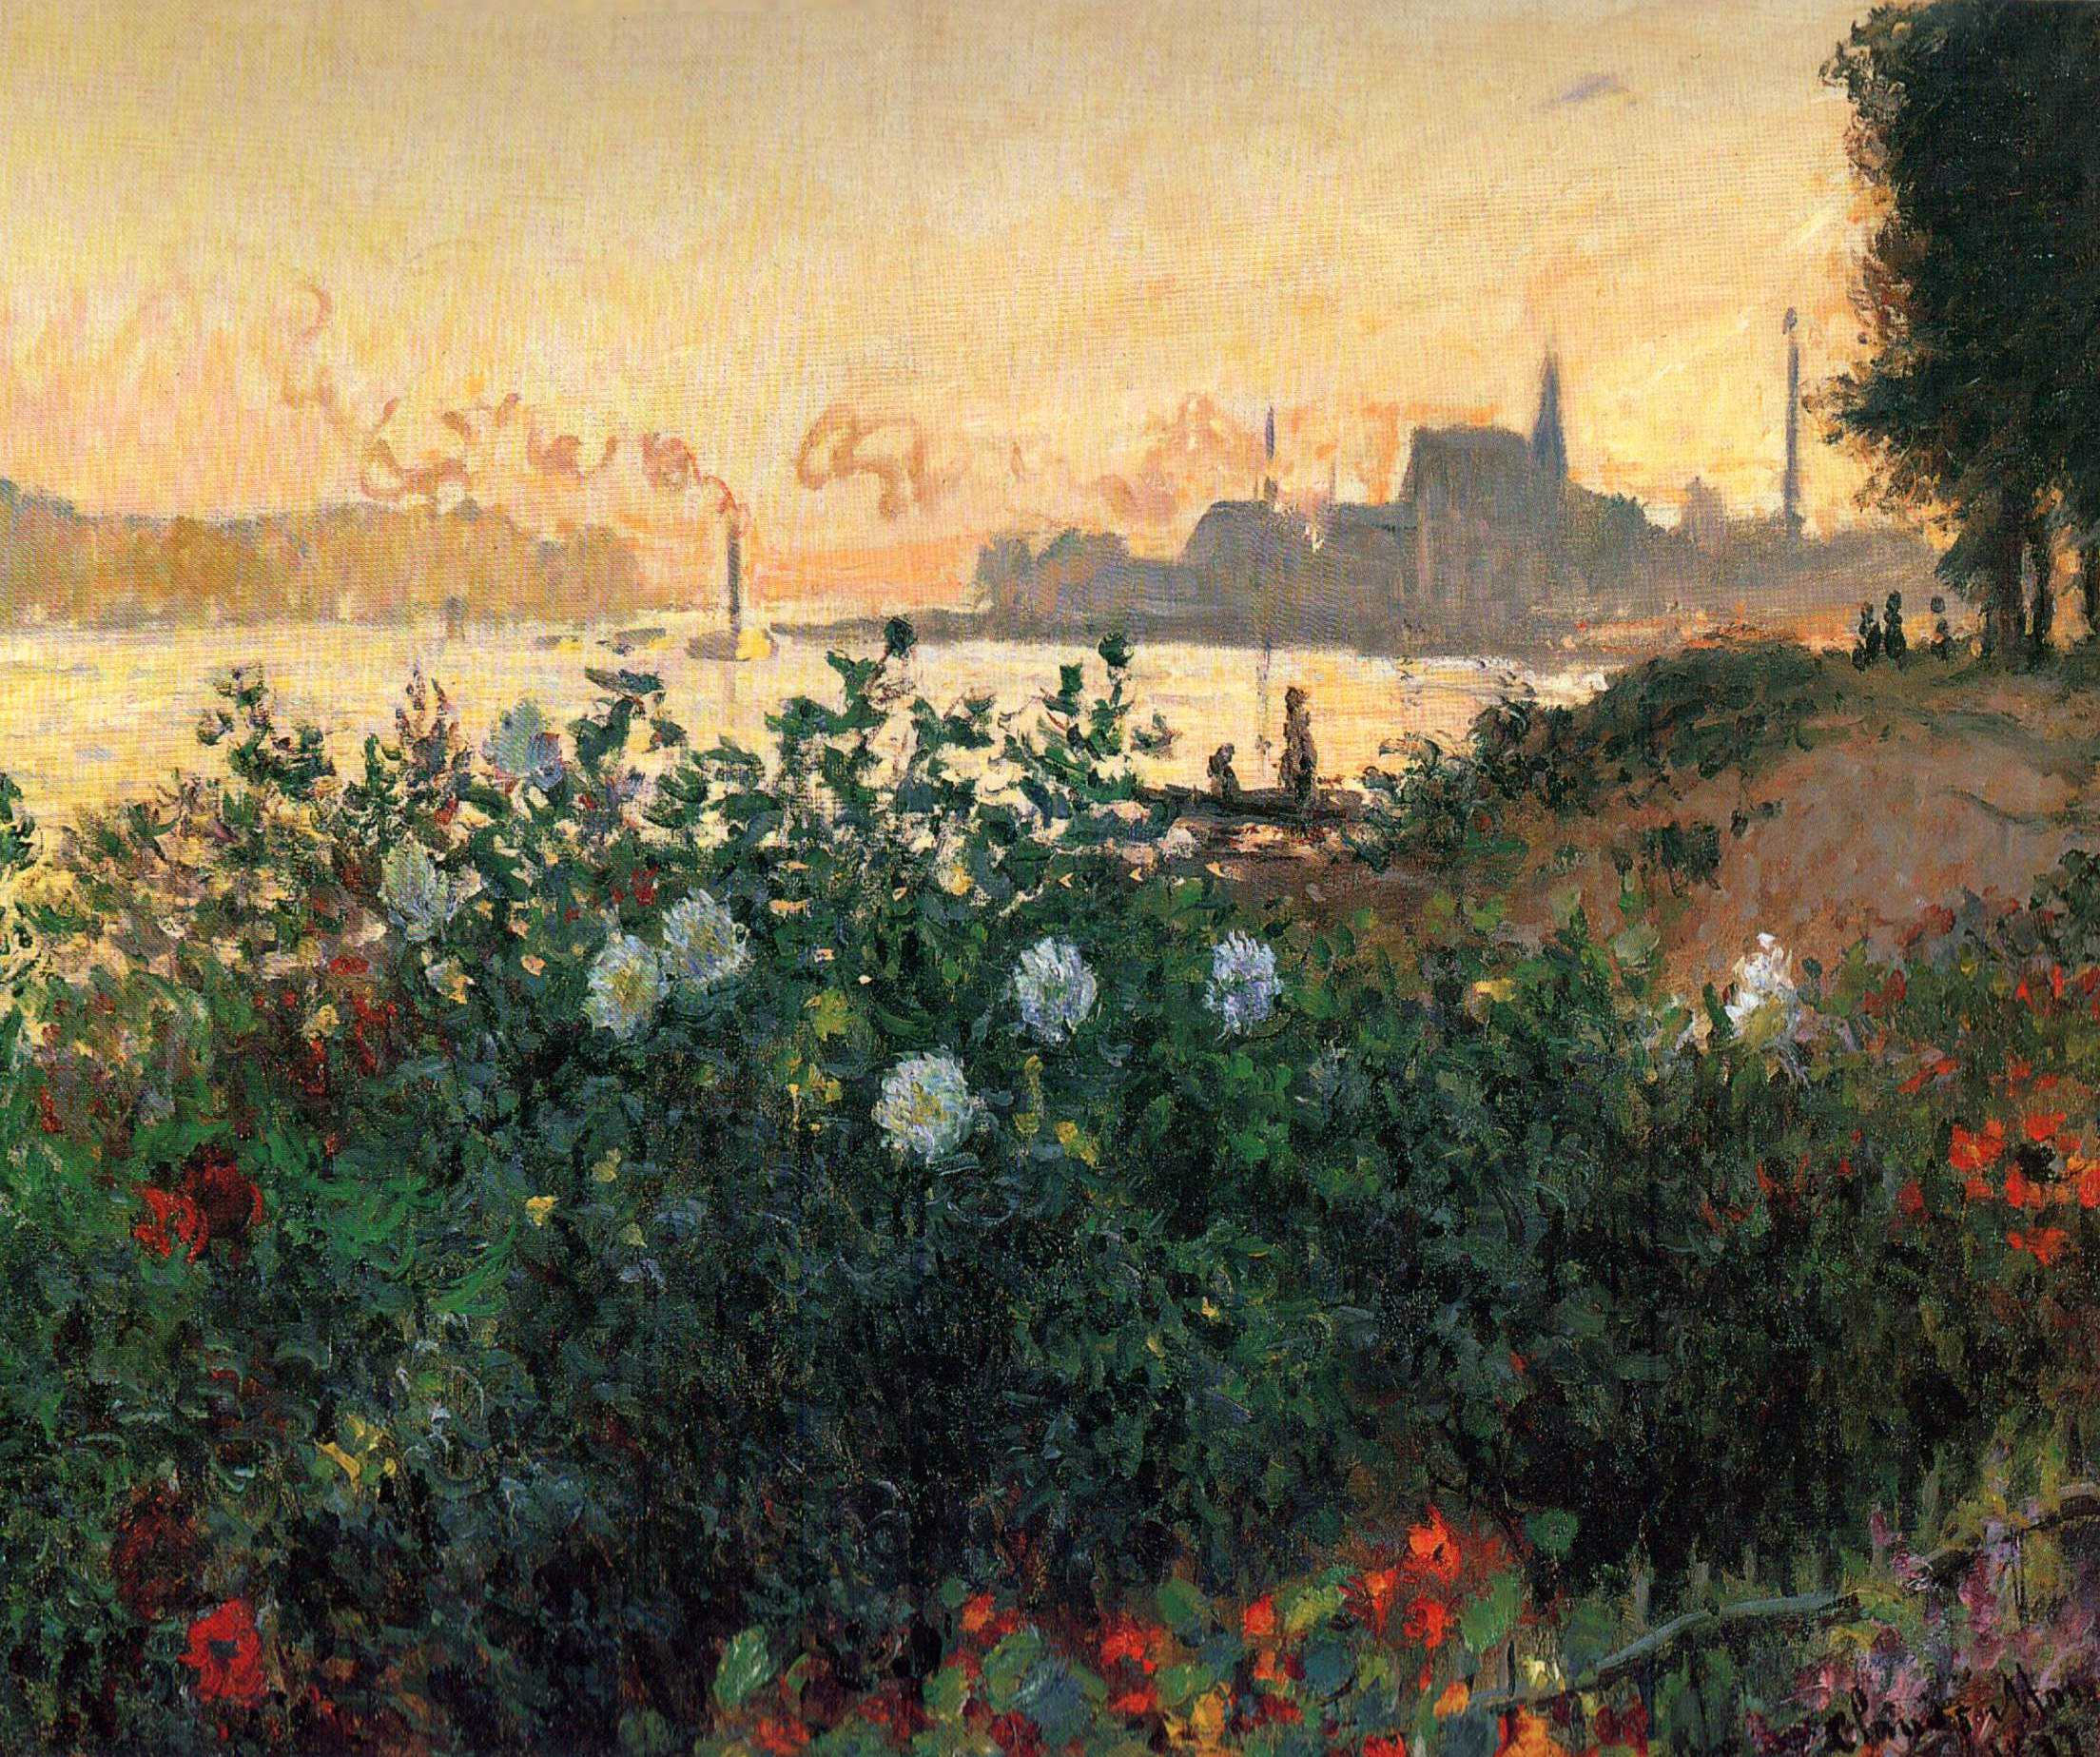 Argenteul'daki Nehir Kıyısındaki Çiçekler by Claude Monet - 1877 - - 